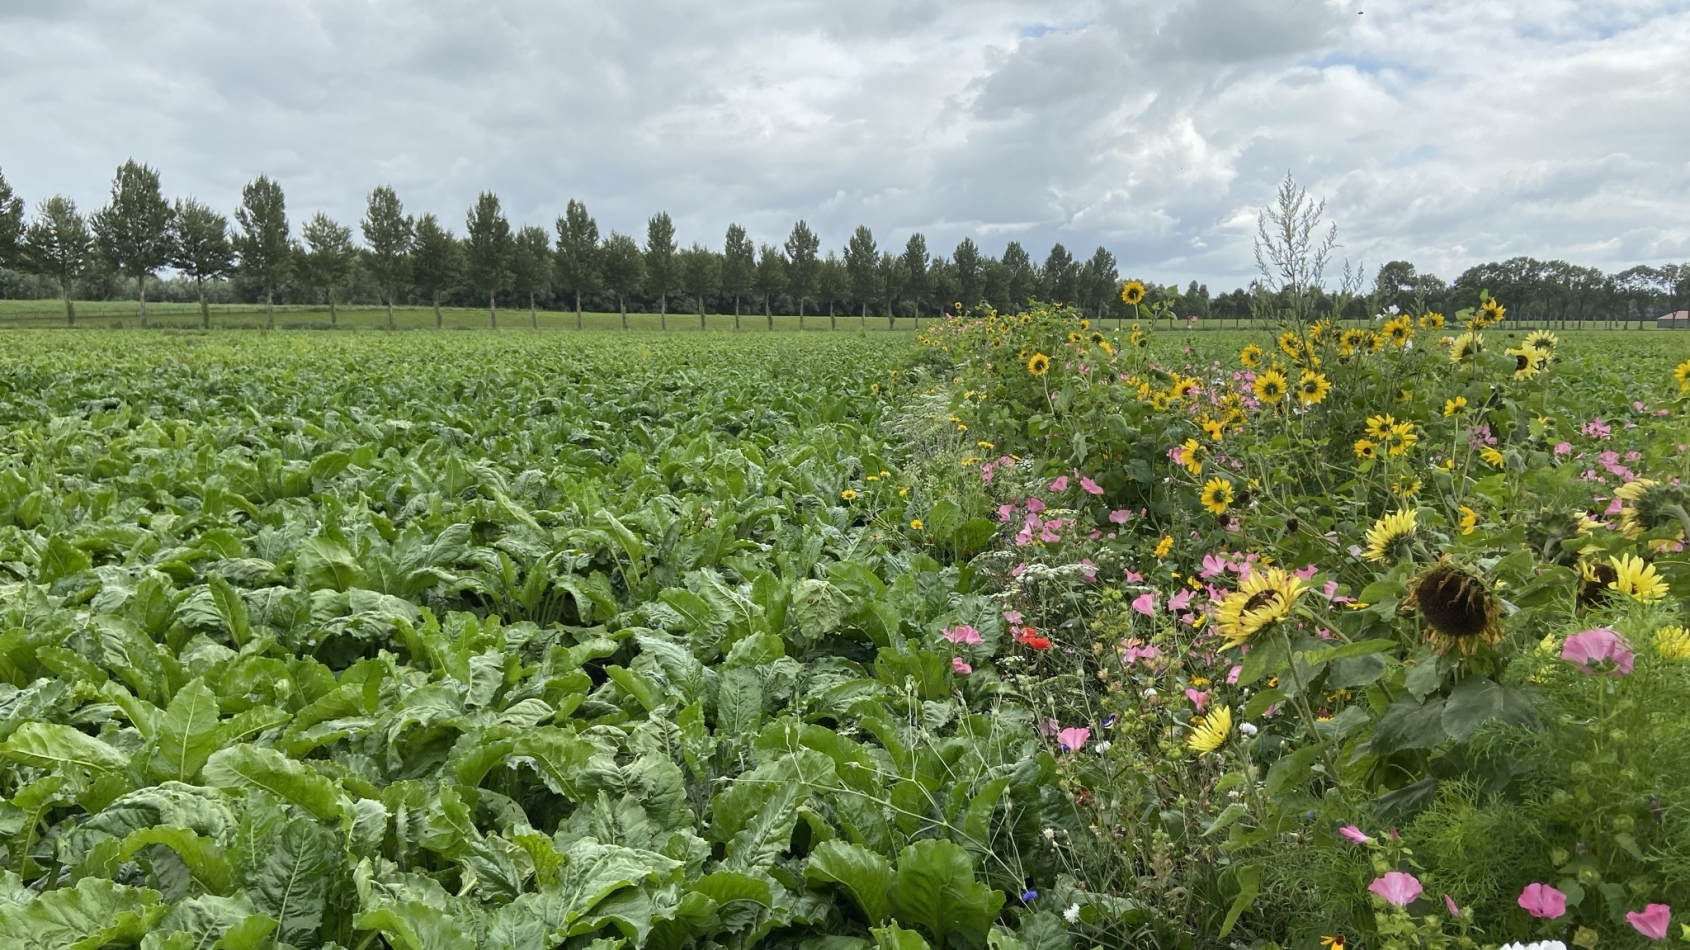 Demoveld kruidenrijkke akkerrand: de gewassen staan naast een strook veldbloemen waaronder zonnebloemen